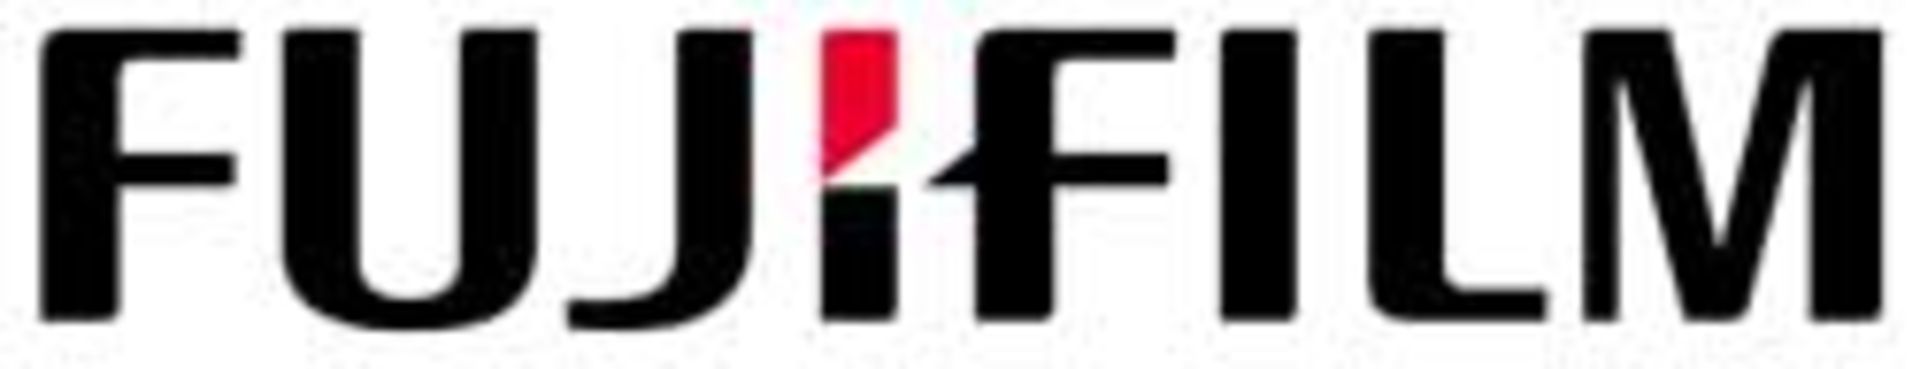 fujifilm-logo-478x92